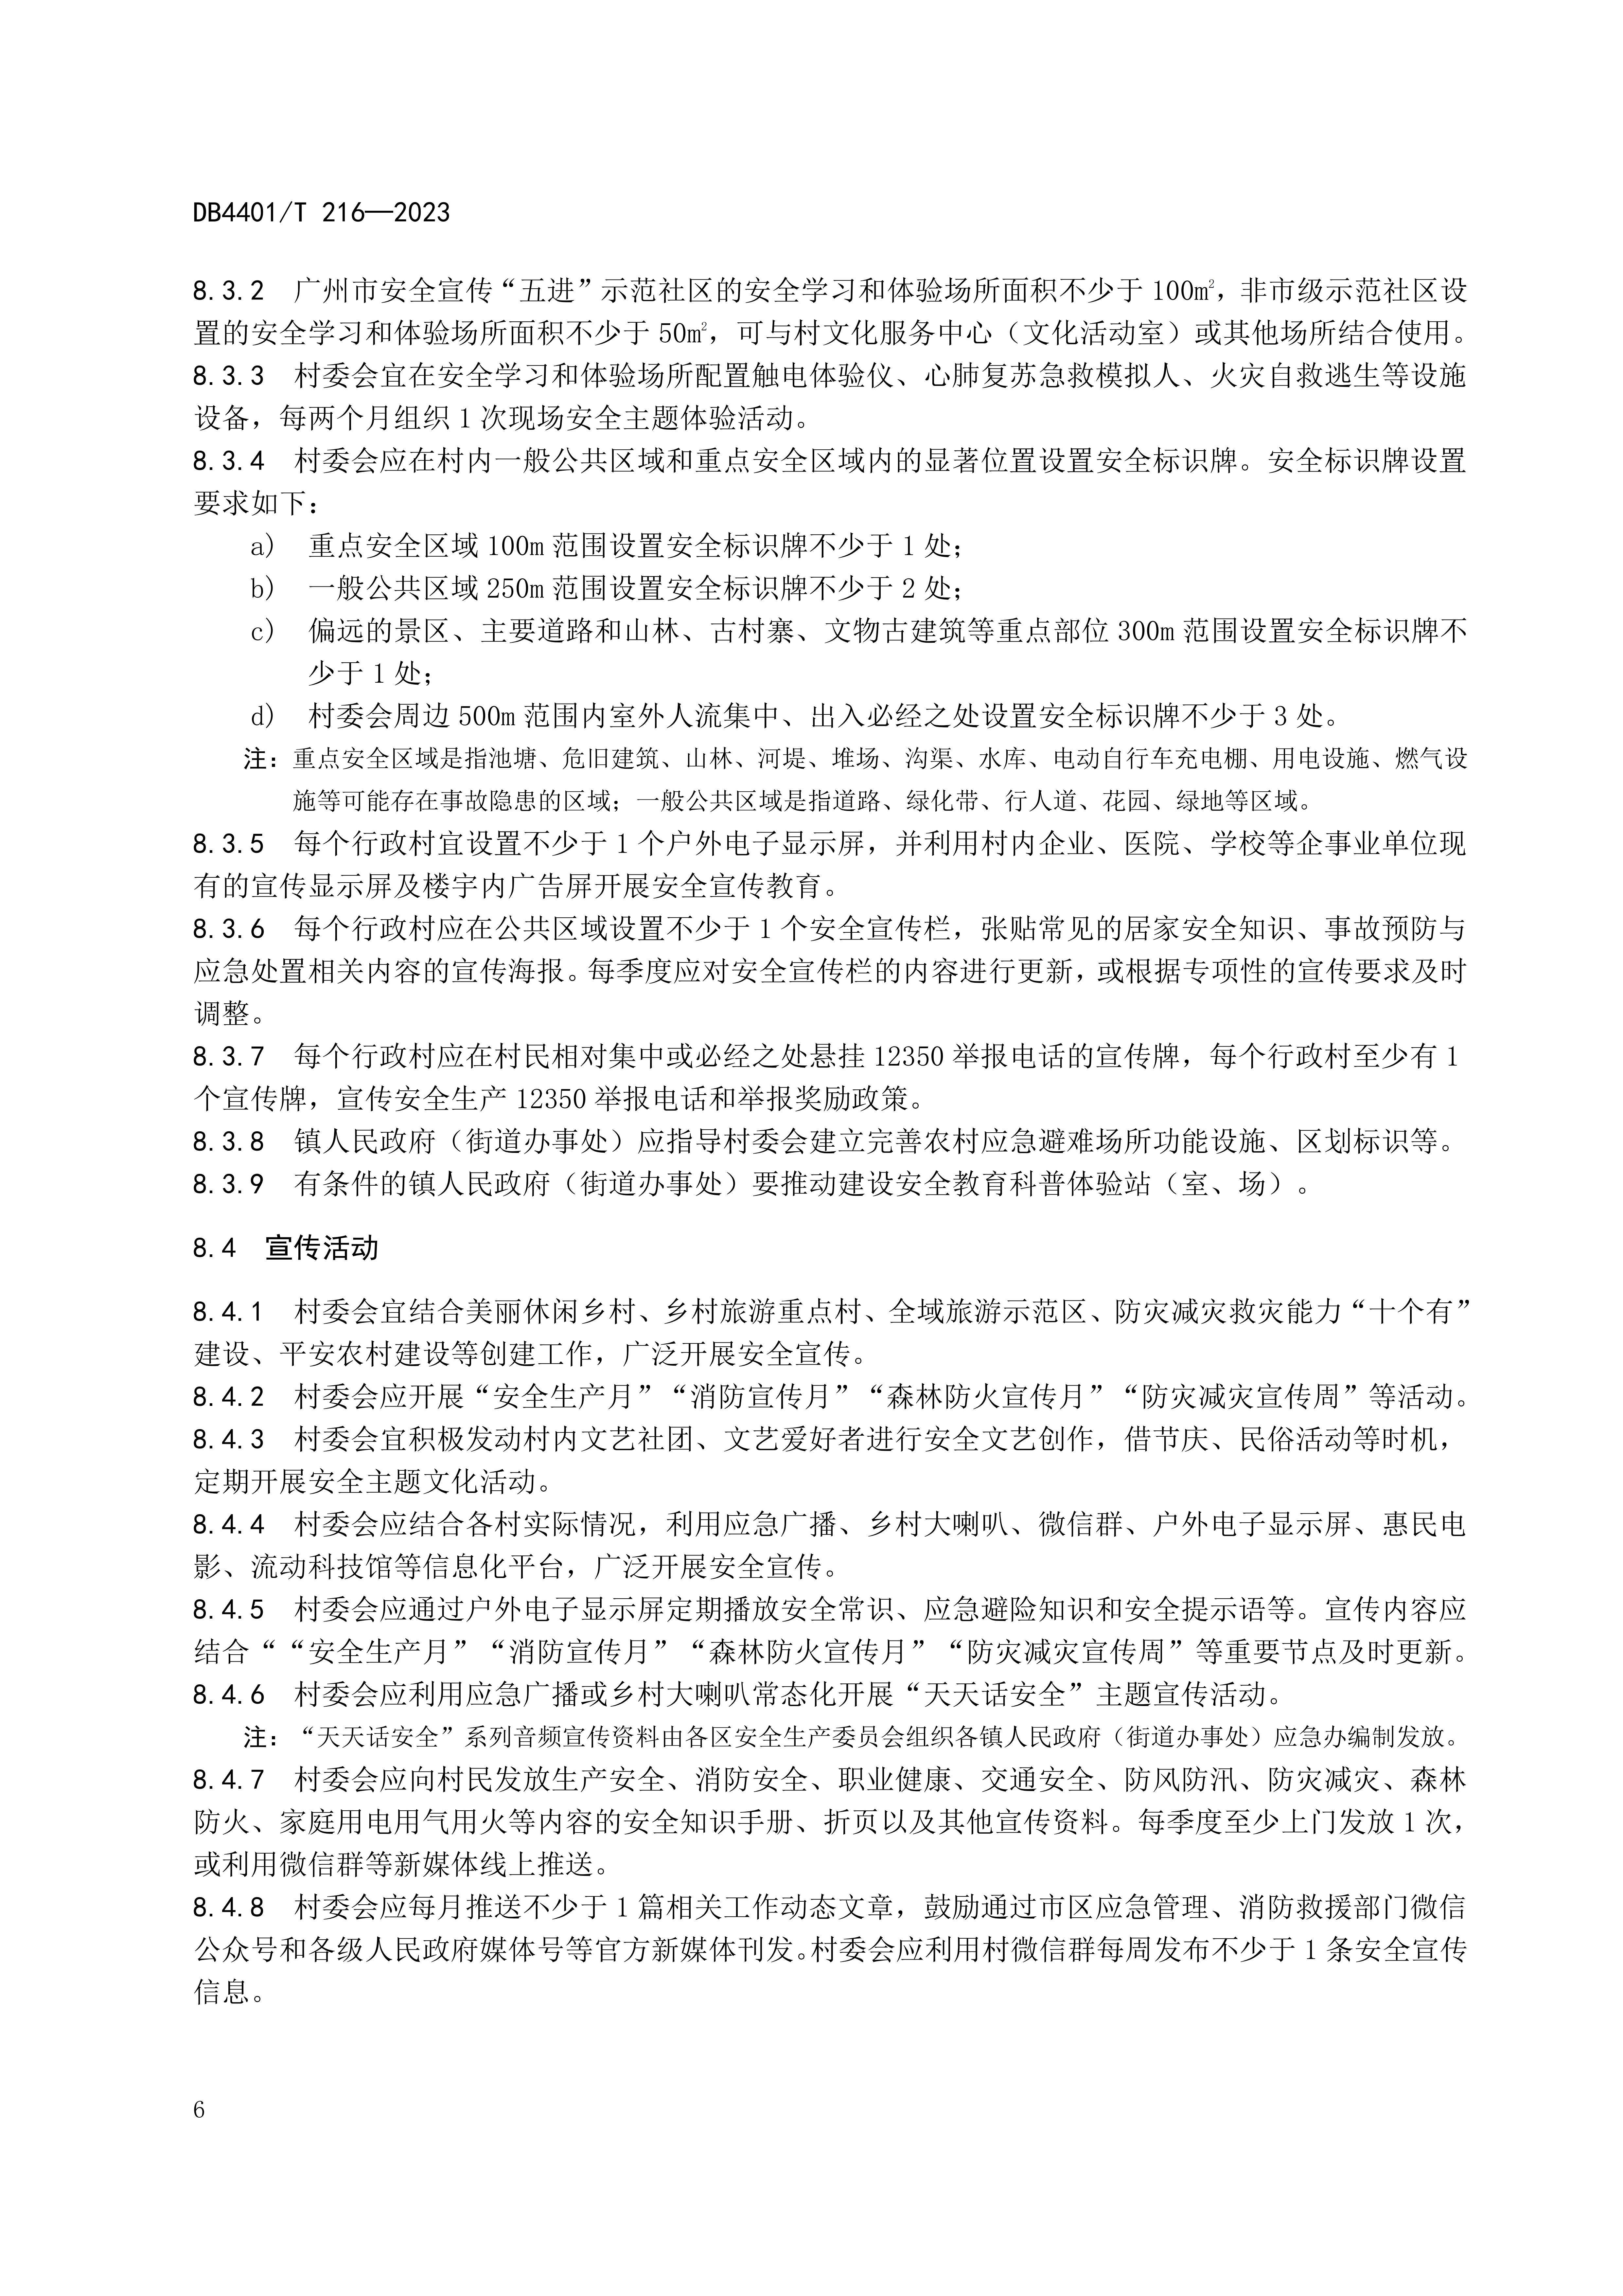 (终稿 发布稿)广州市地方标准《安全宣传“五进”工作规范》20230625_11.jpg